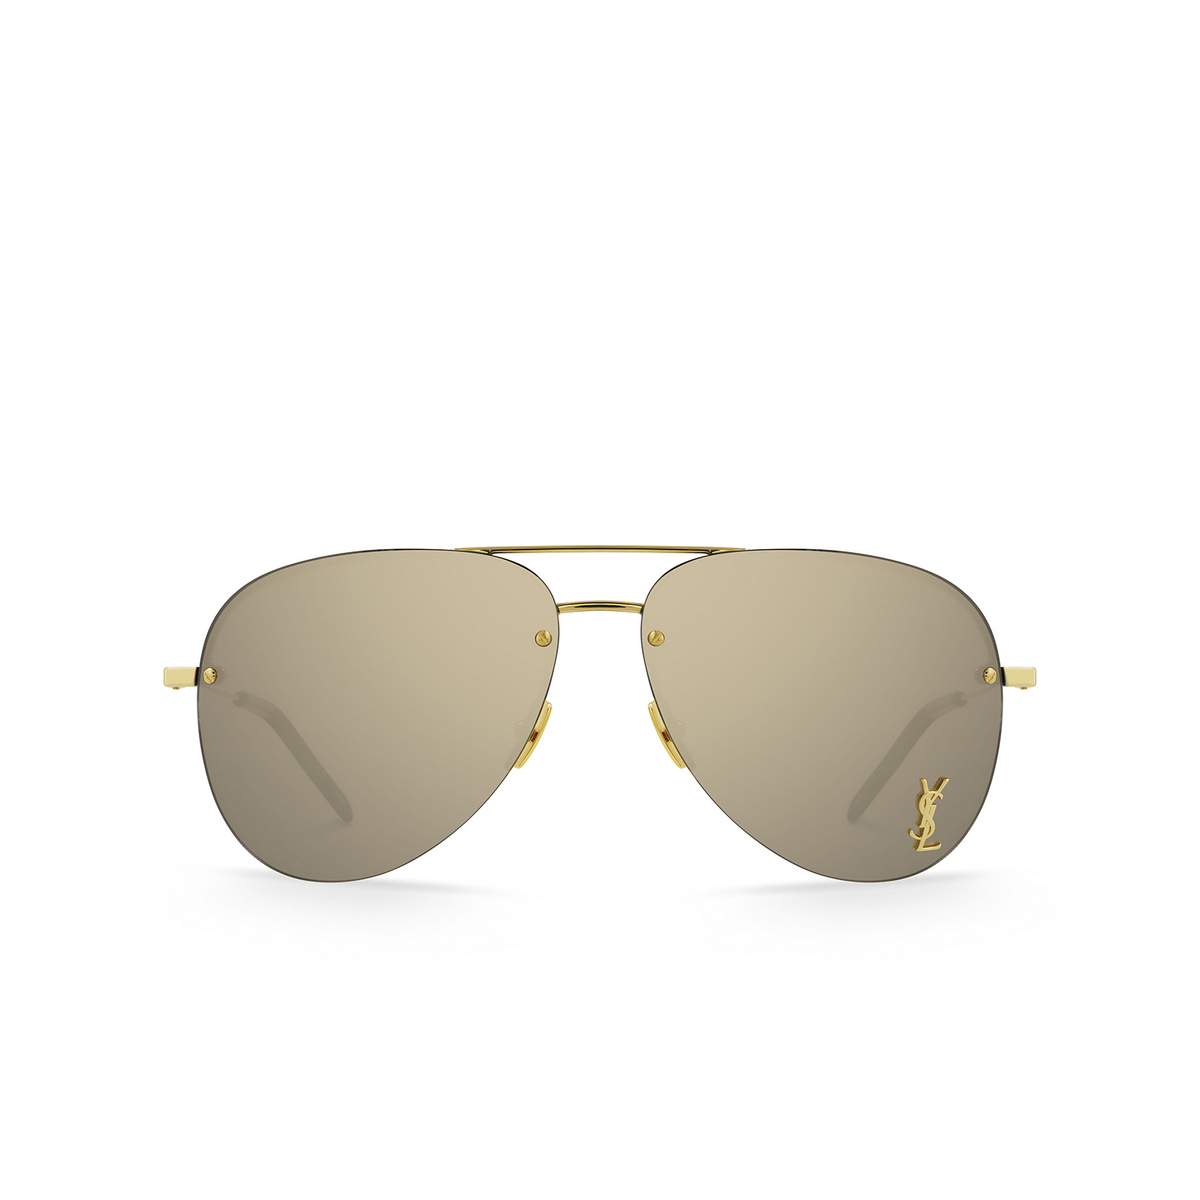 Saint Laurent® Aviator Sunglasses: CLASSIC 11 M color Gold 004 - front view.